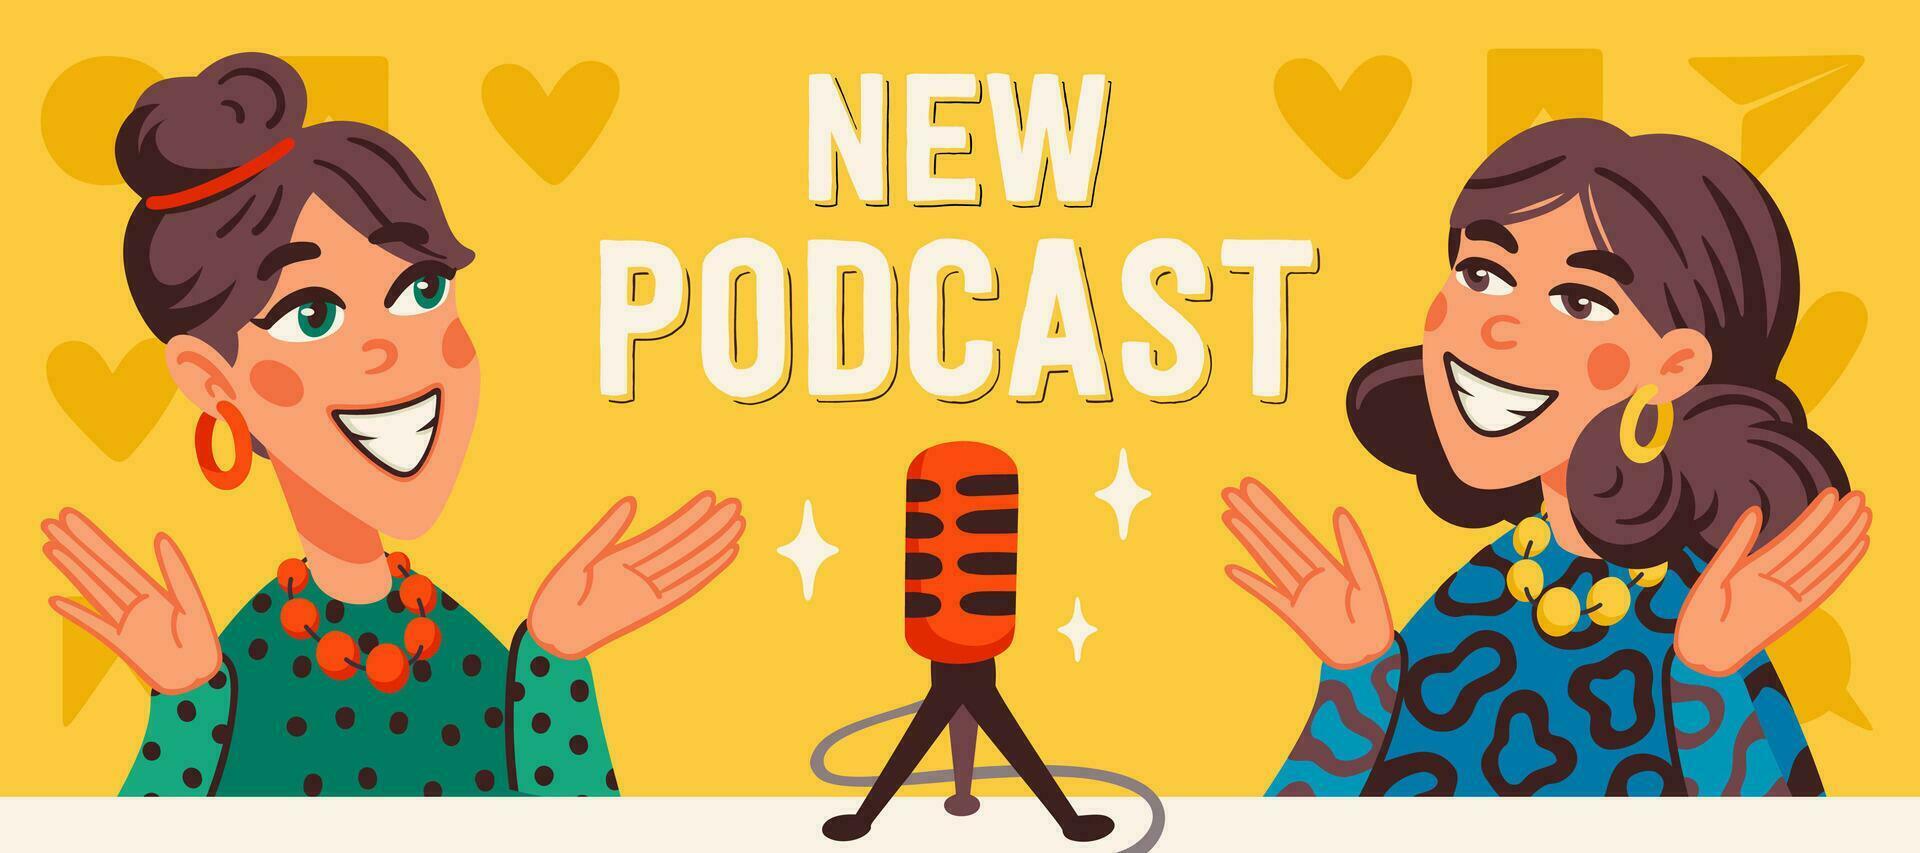 Podcast couverture concept. deux joyeux les filles enregistrement l'audio Podcast ou en ligne spectacle vecteur plat illustration.